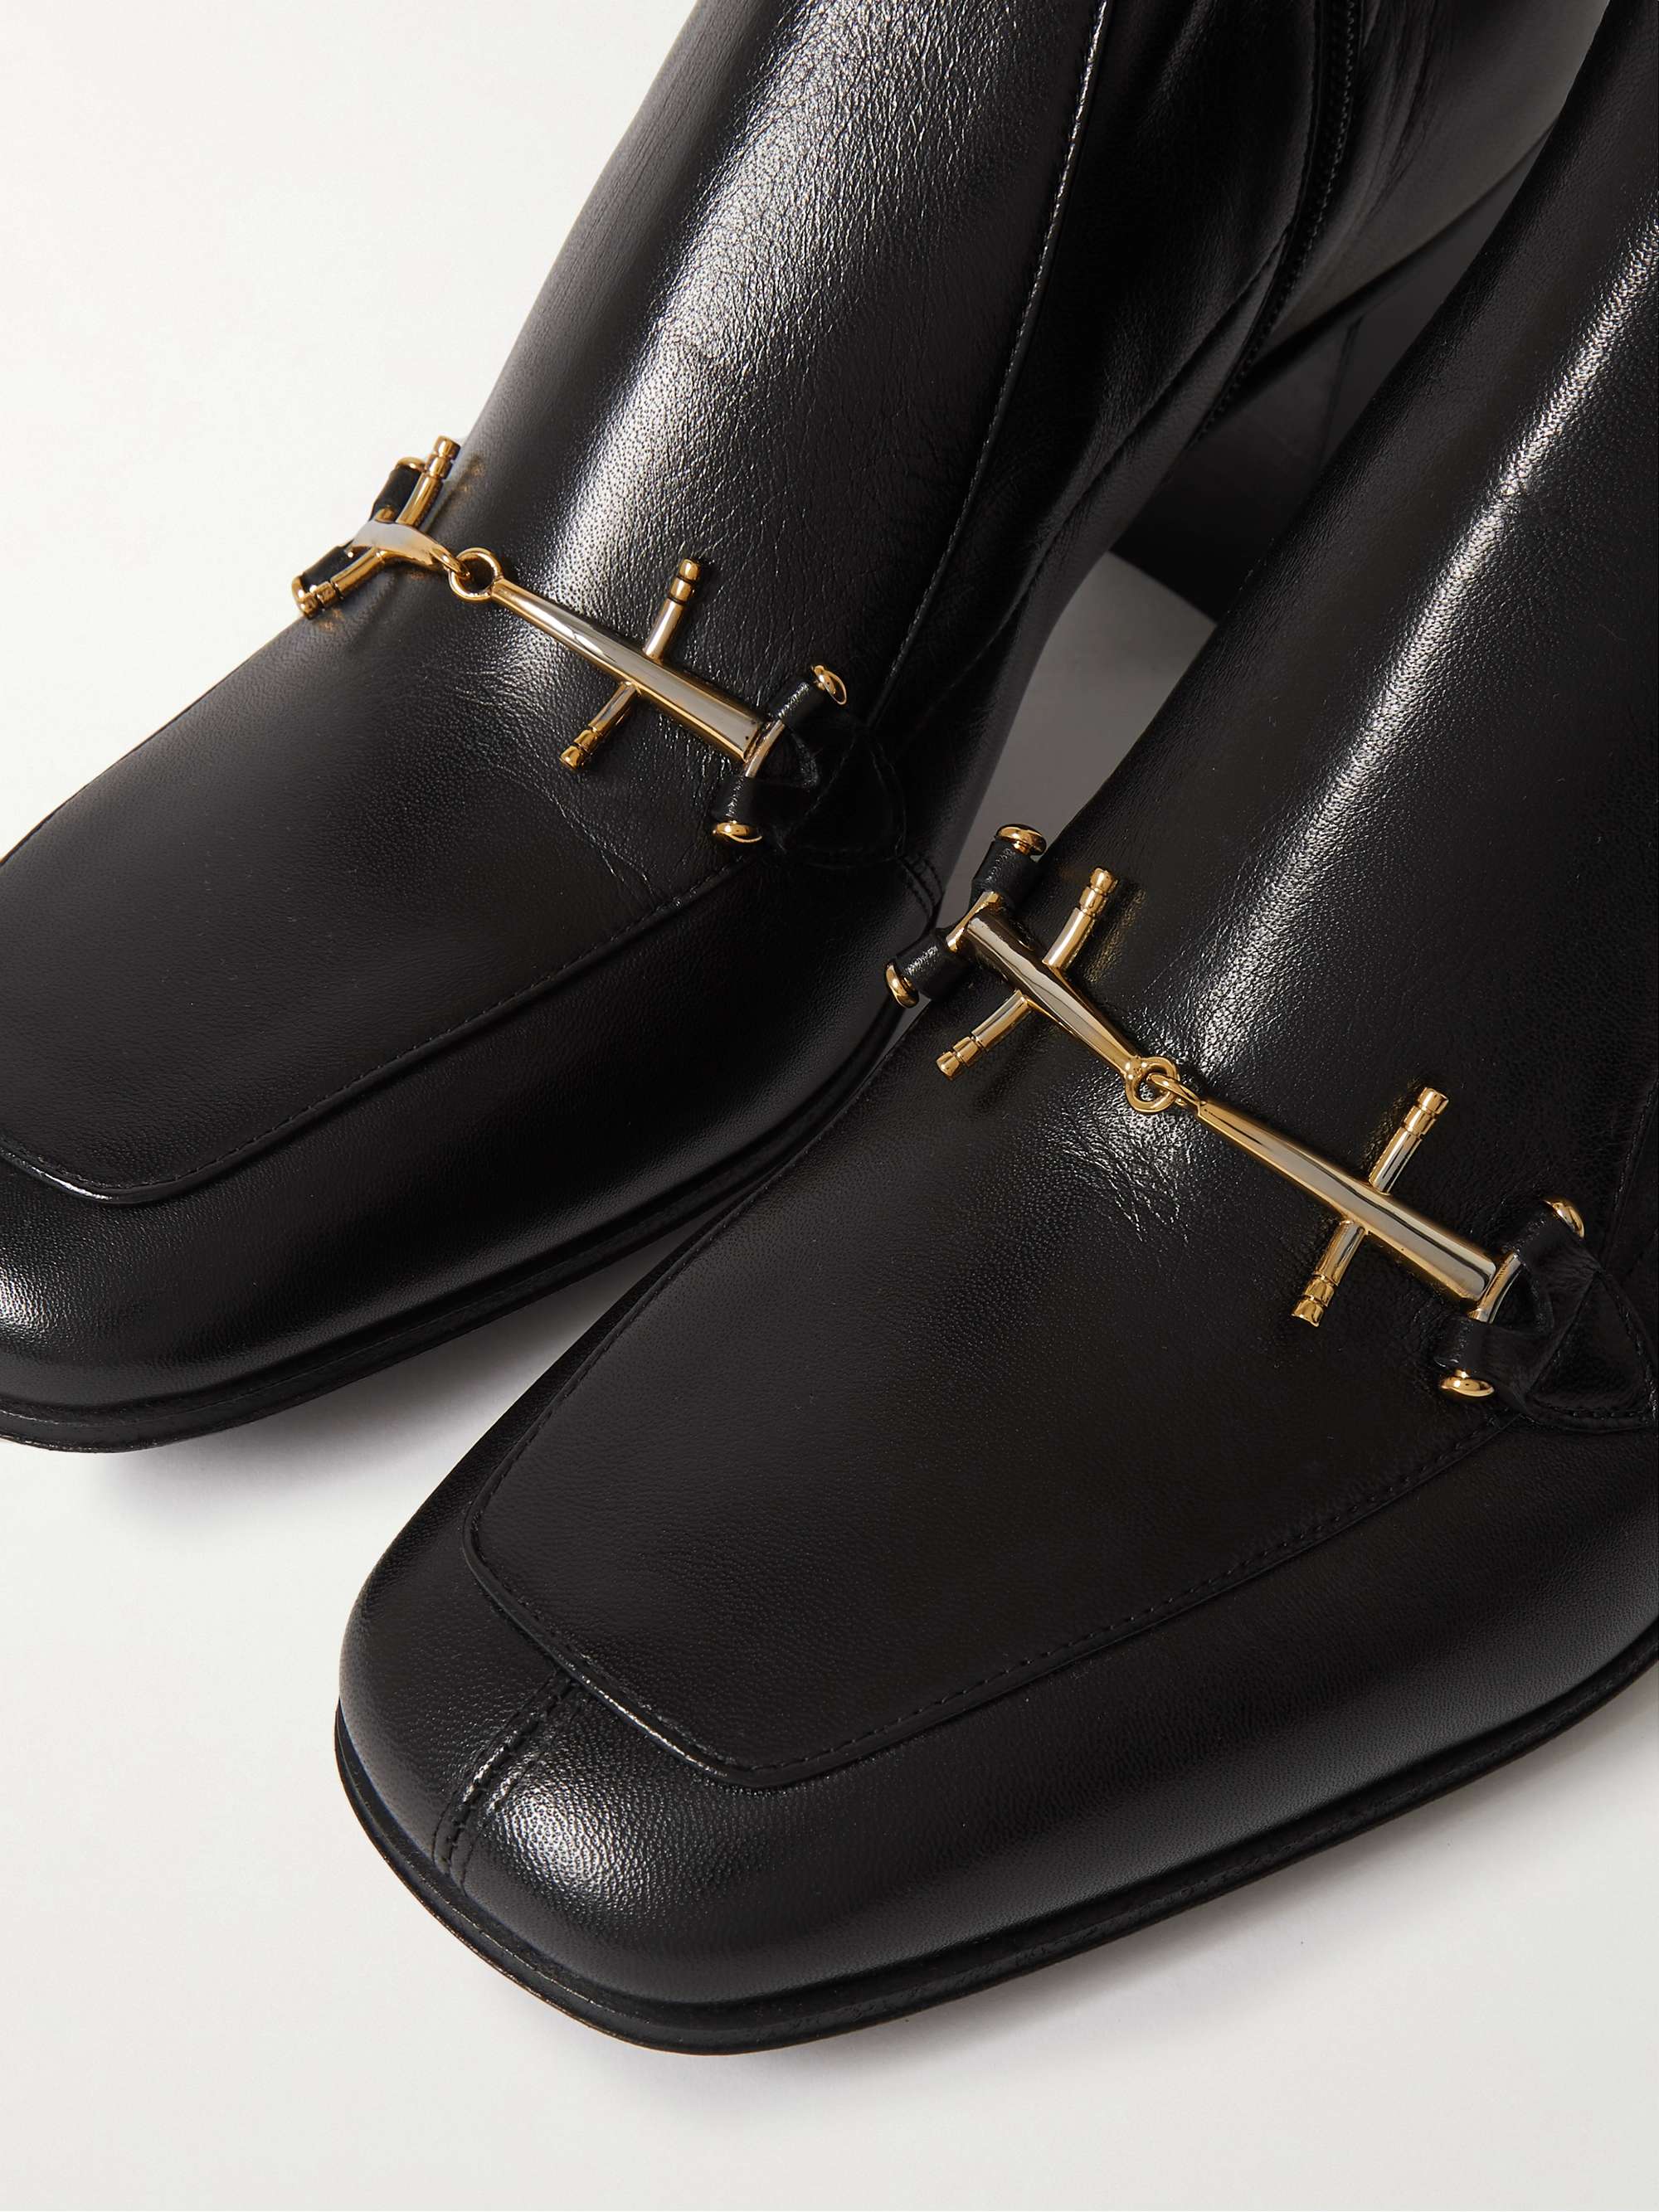 SAINT LAURENT Horsebit Leather Ankle Boots | MR PORTER